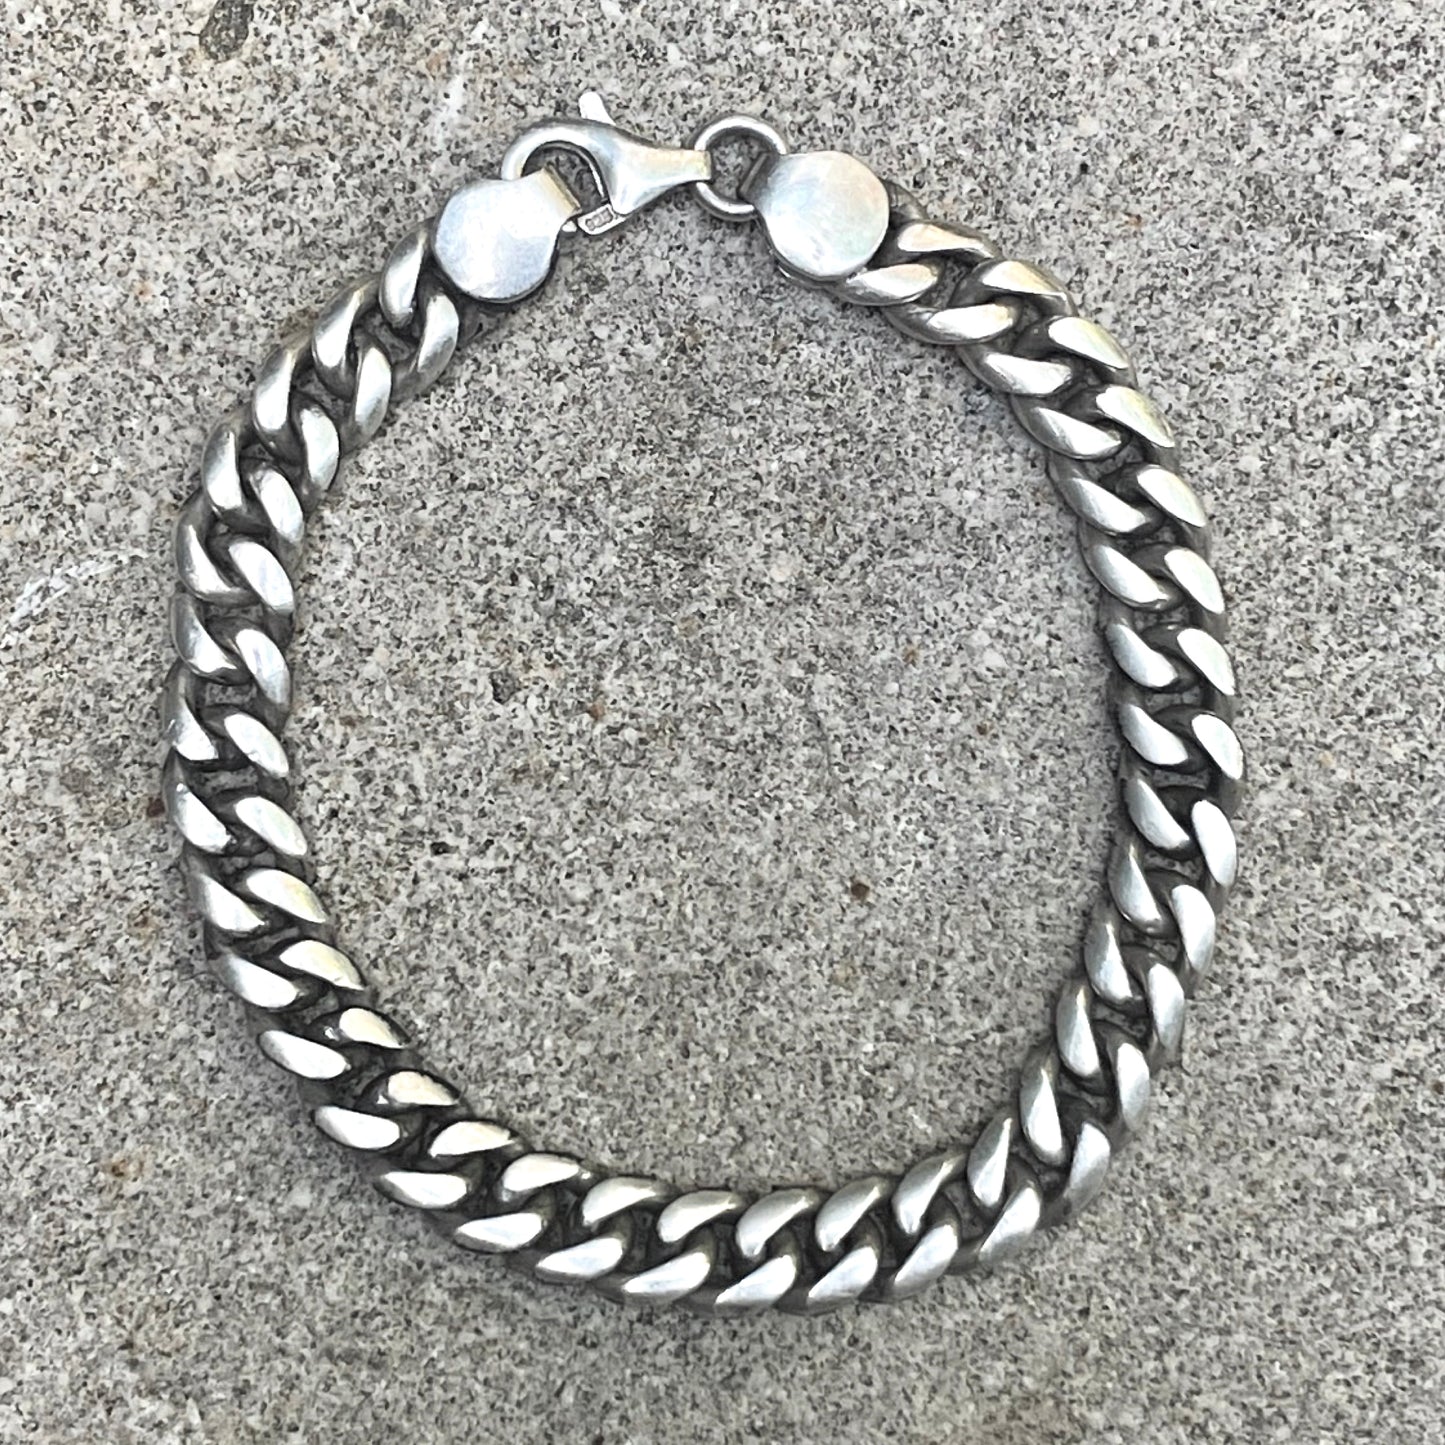 Solid 925 Silver Bracelet